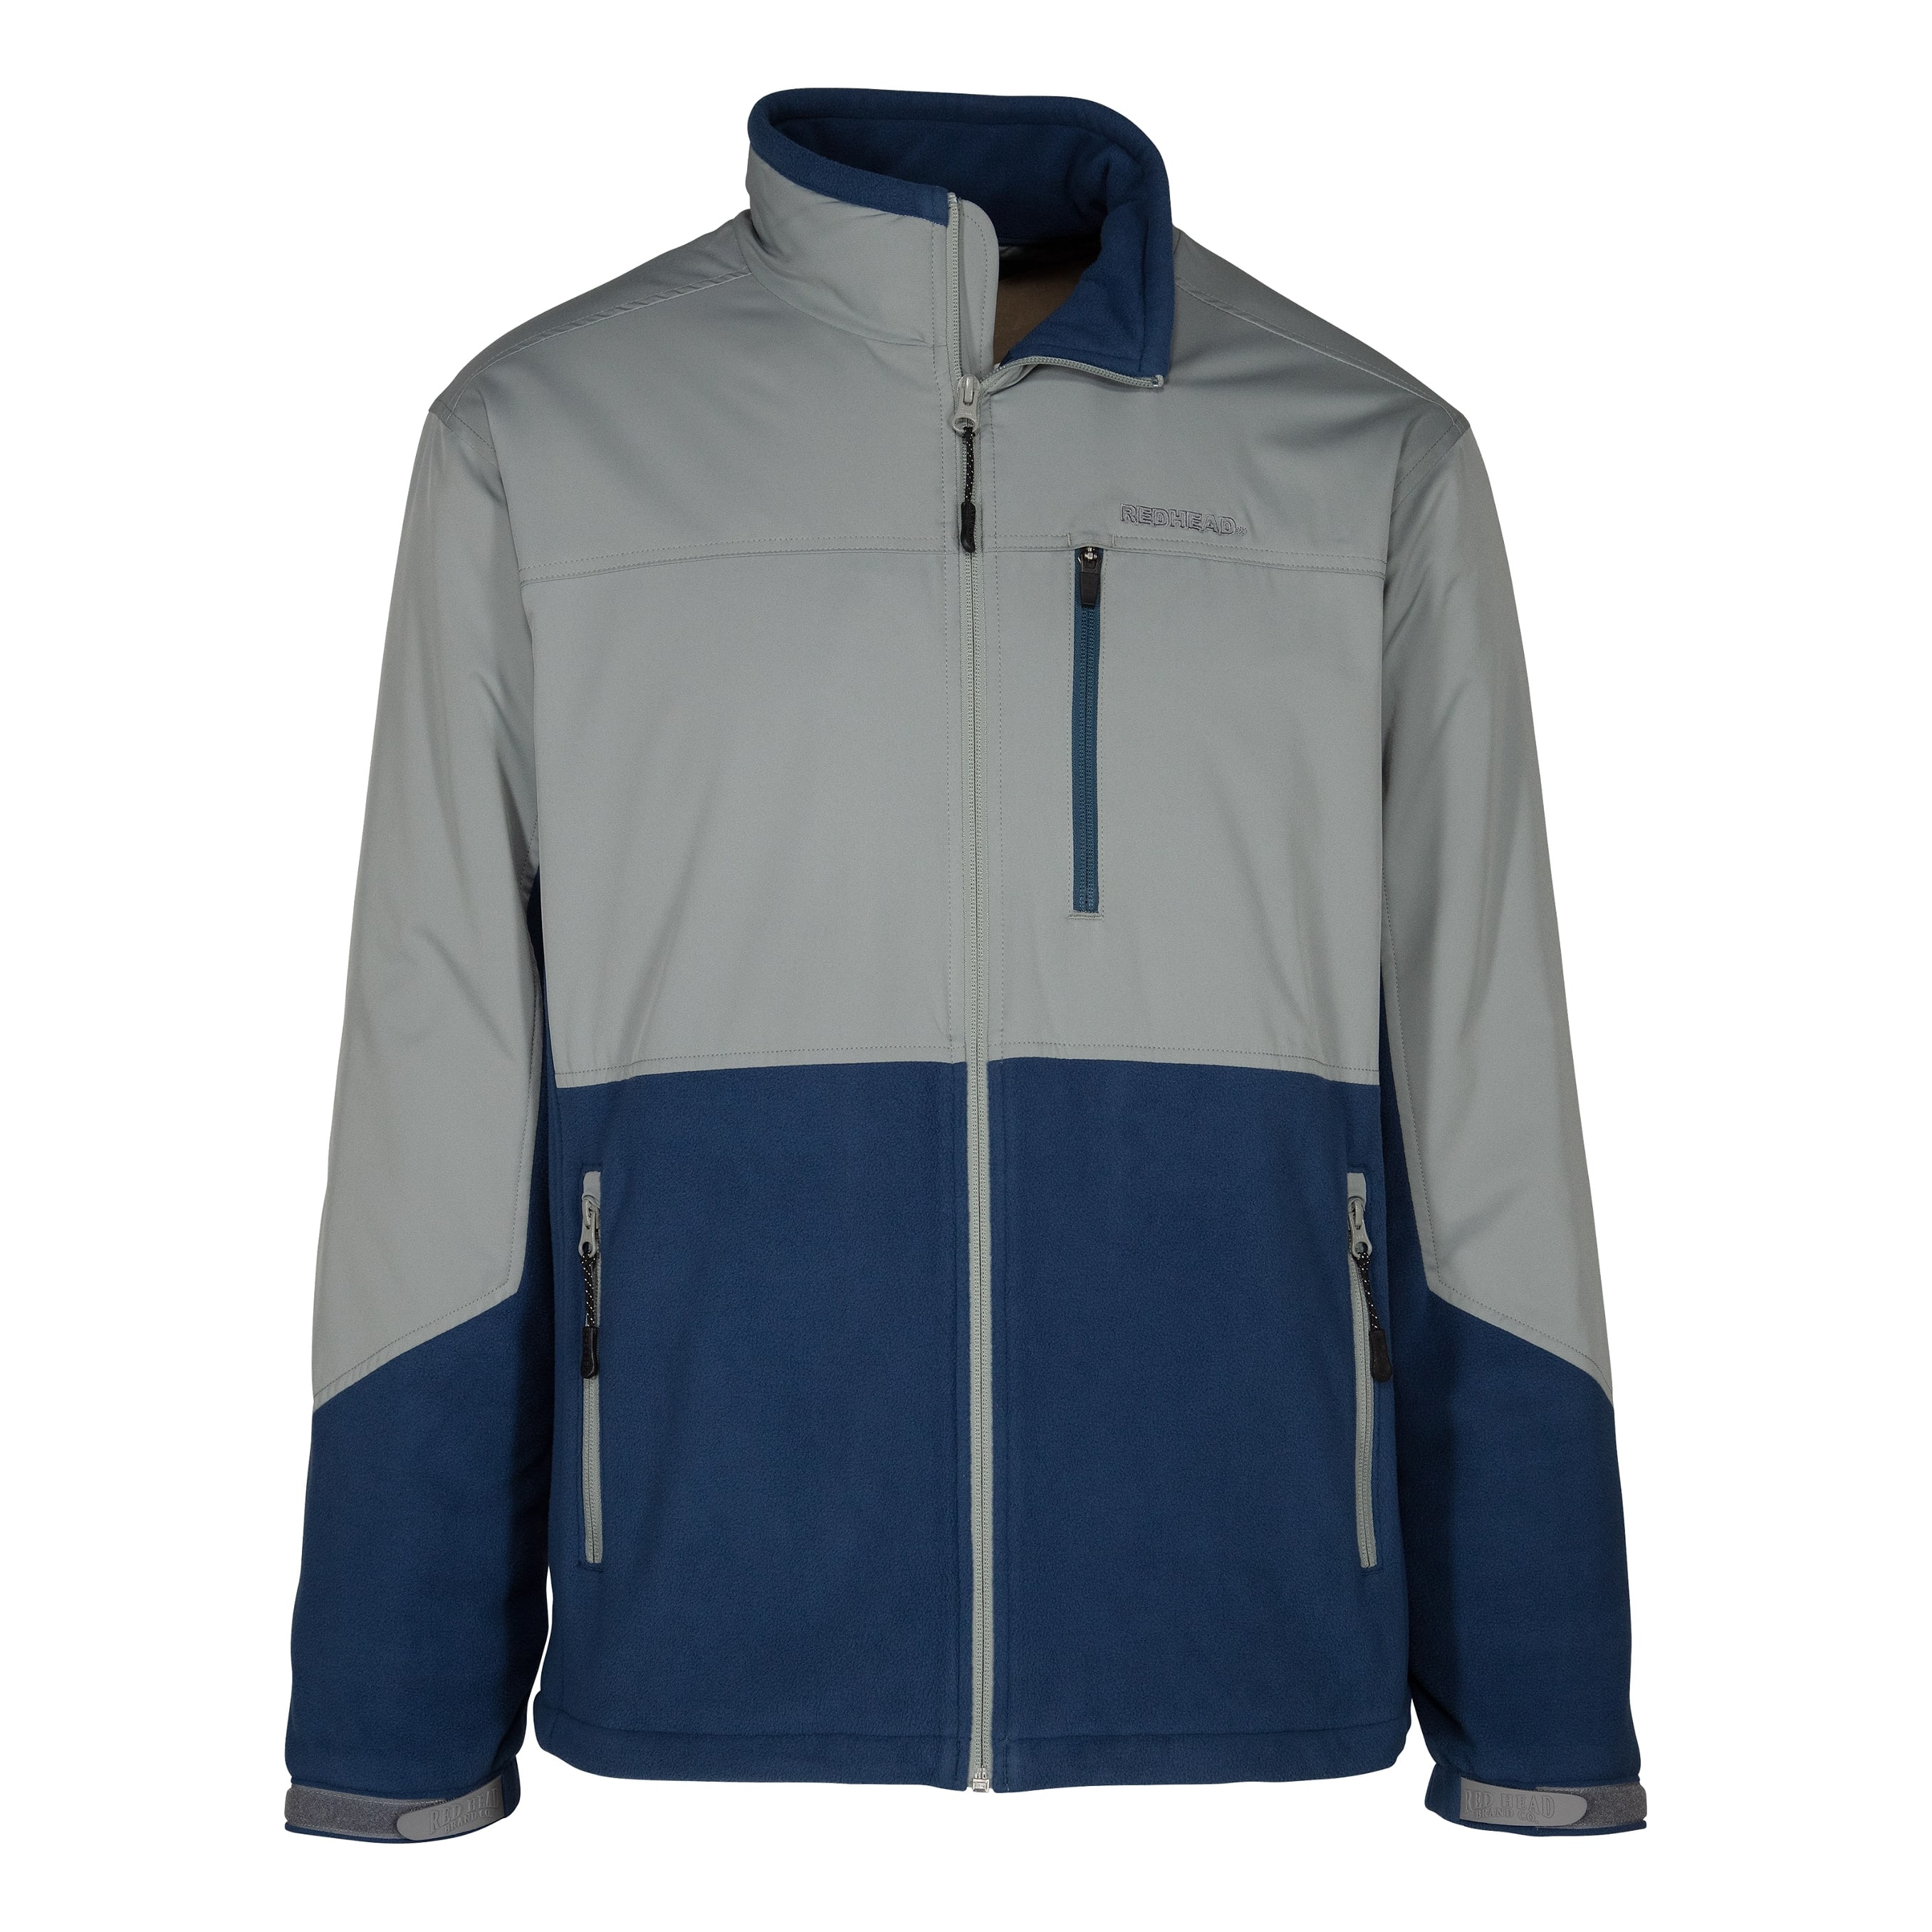 RedHead® Men’s Insulated Fleece Jacket - Grey/Navy